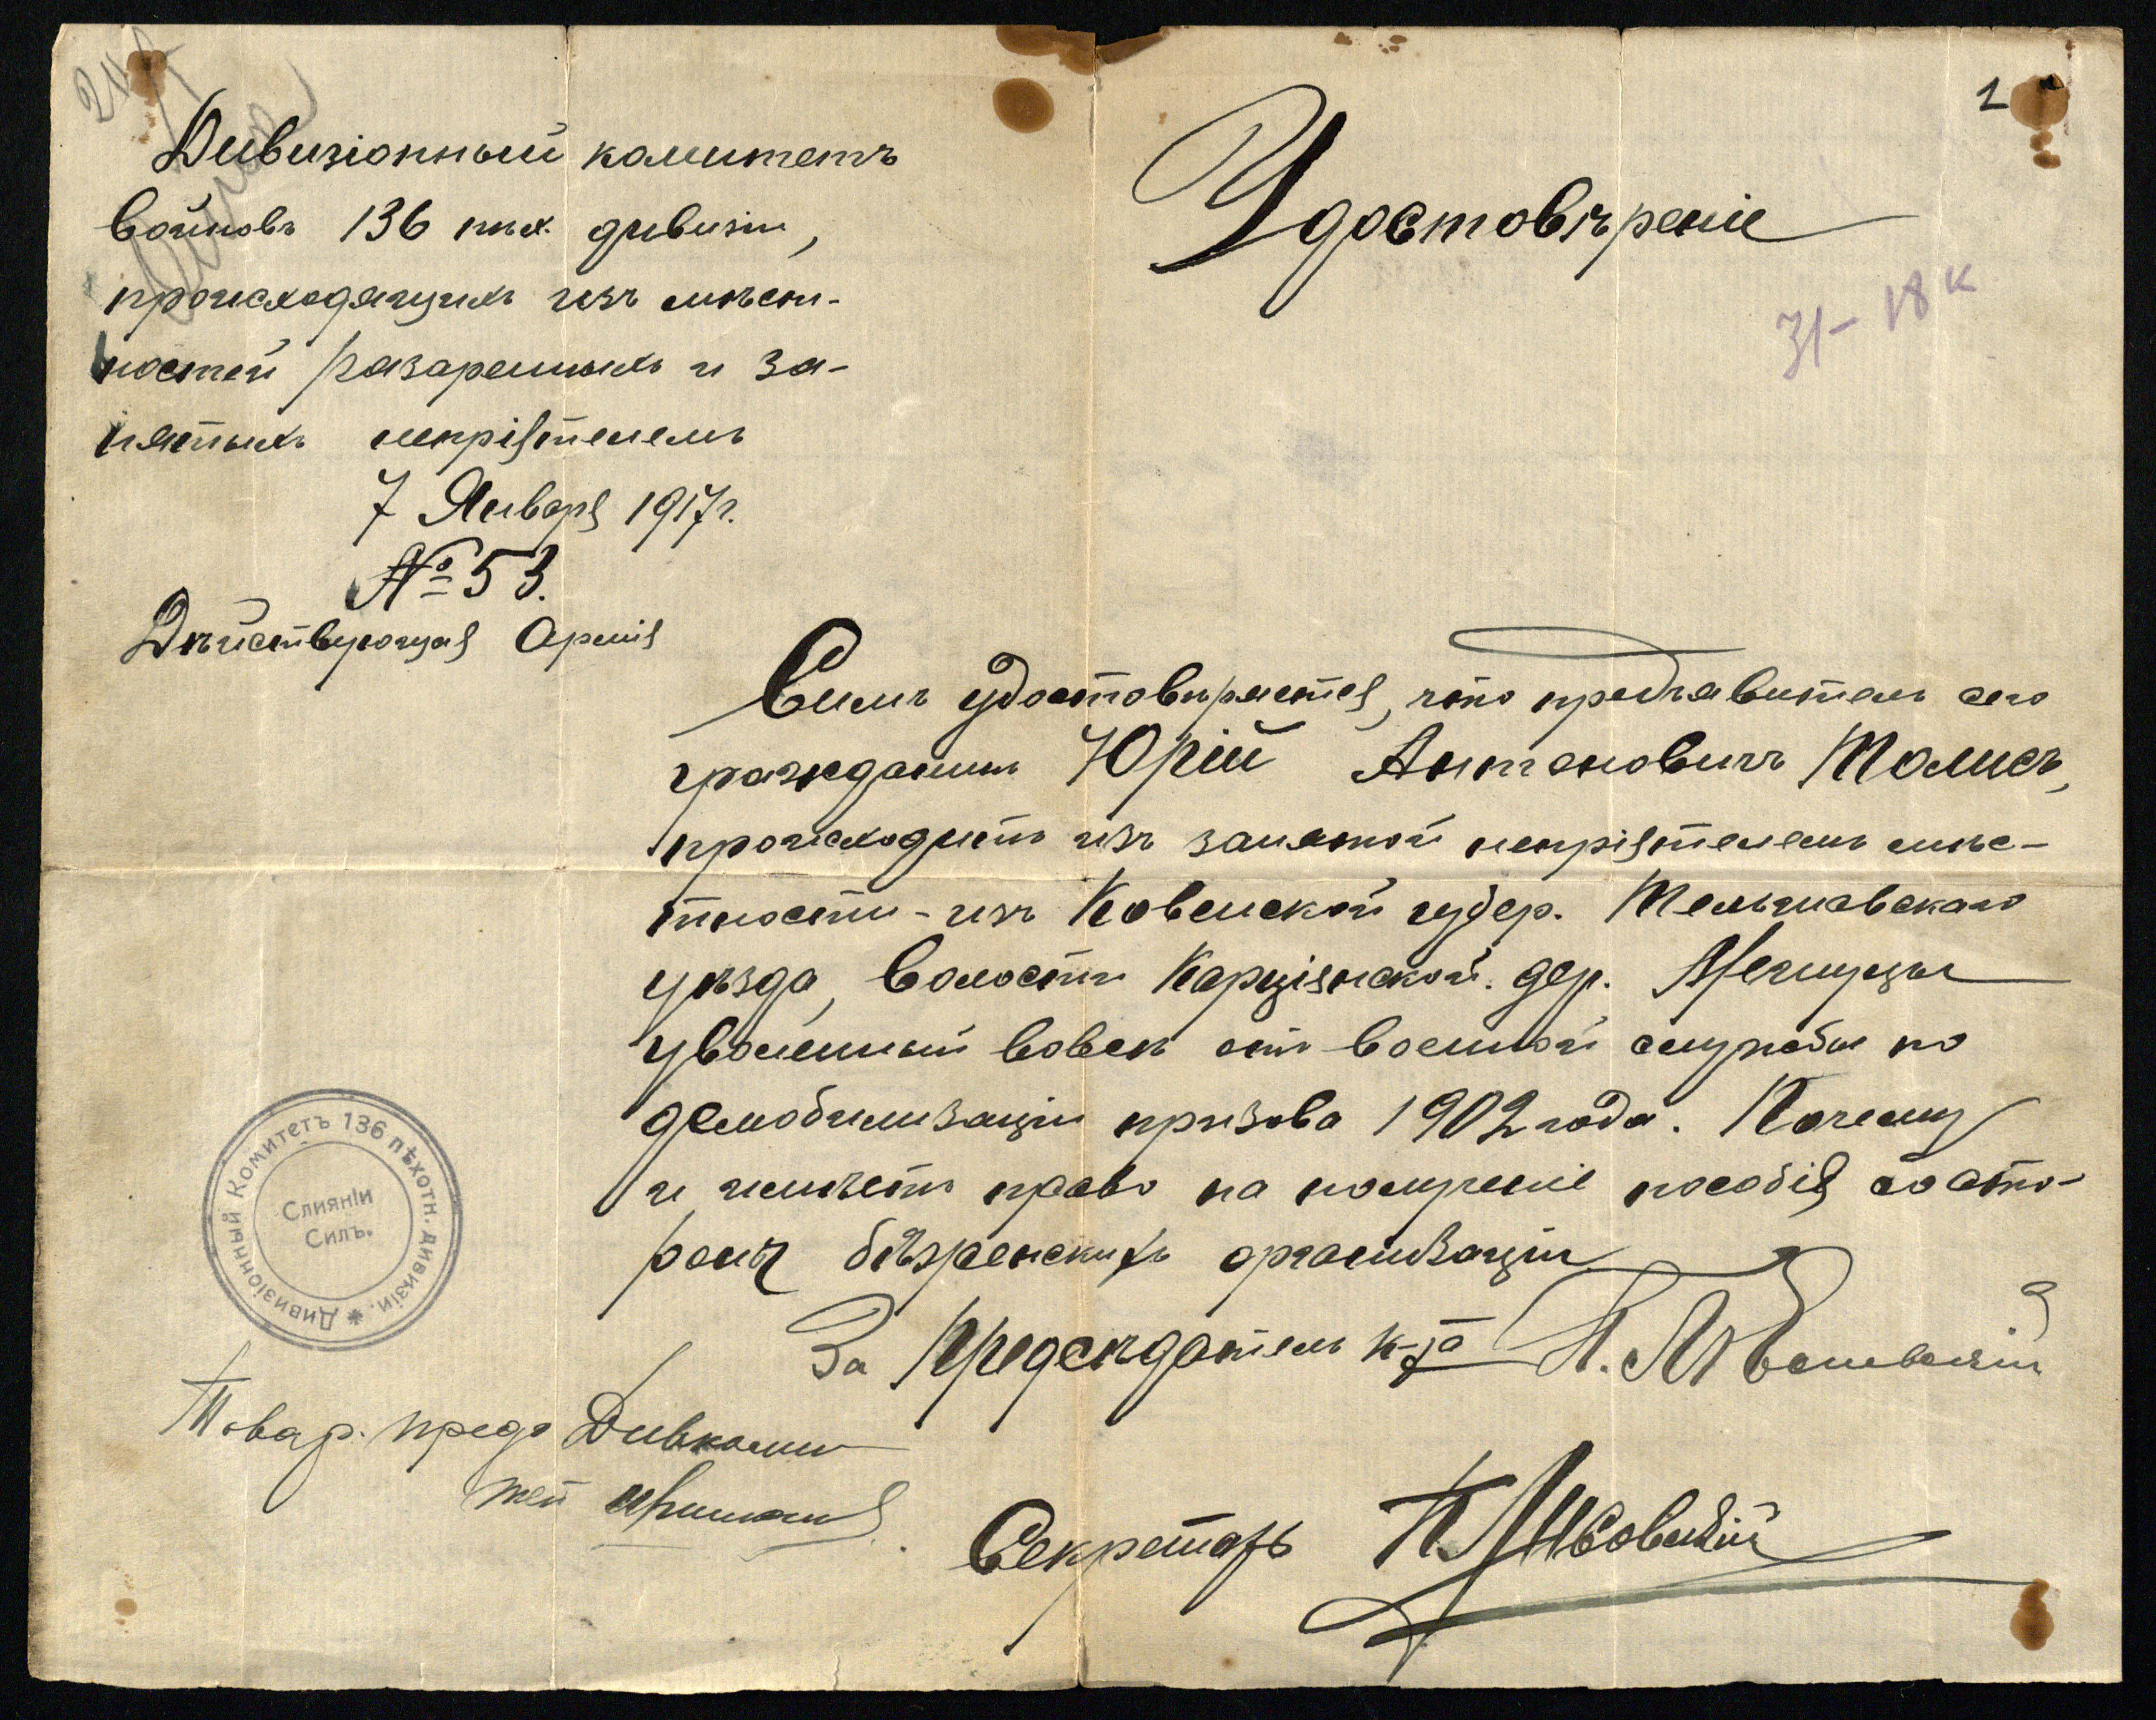 136-osios pėstininkų divizijos karių komiteto išduota pažyma Jurgiui Toliui